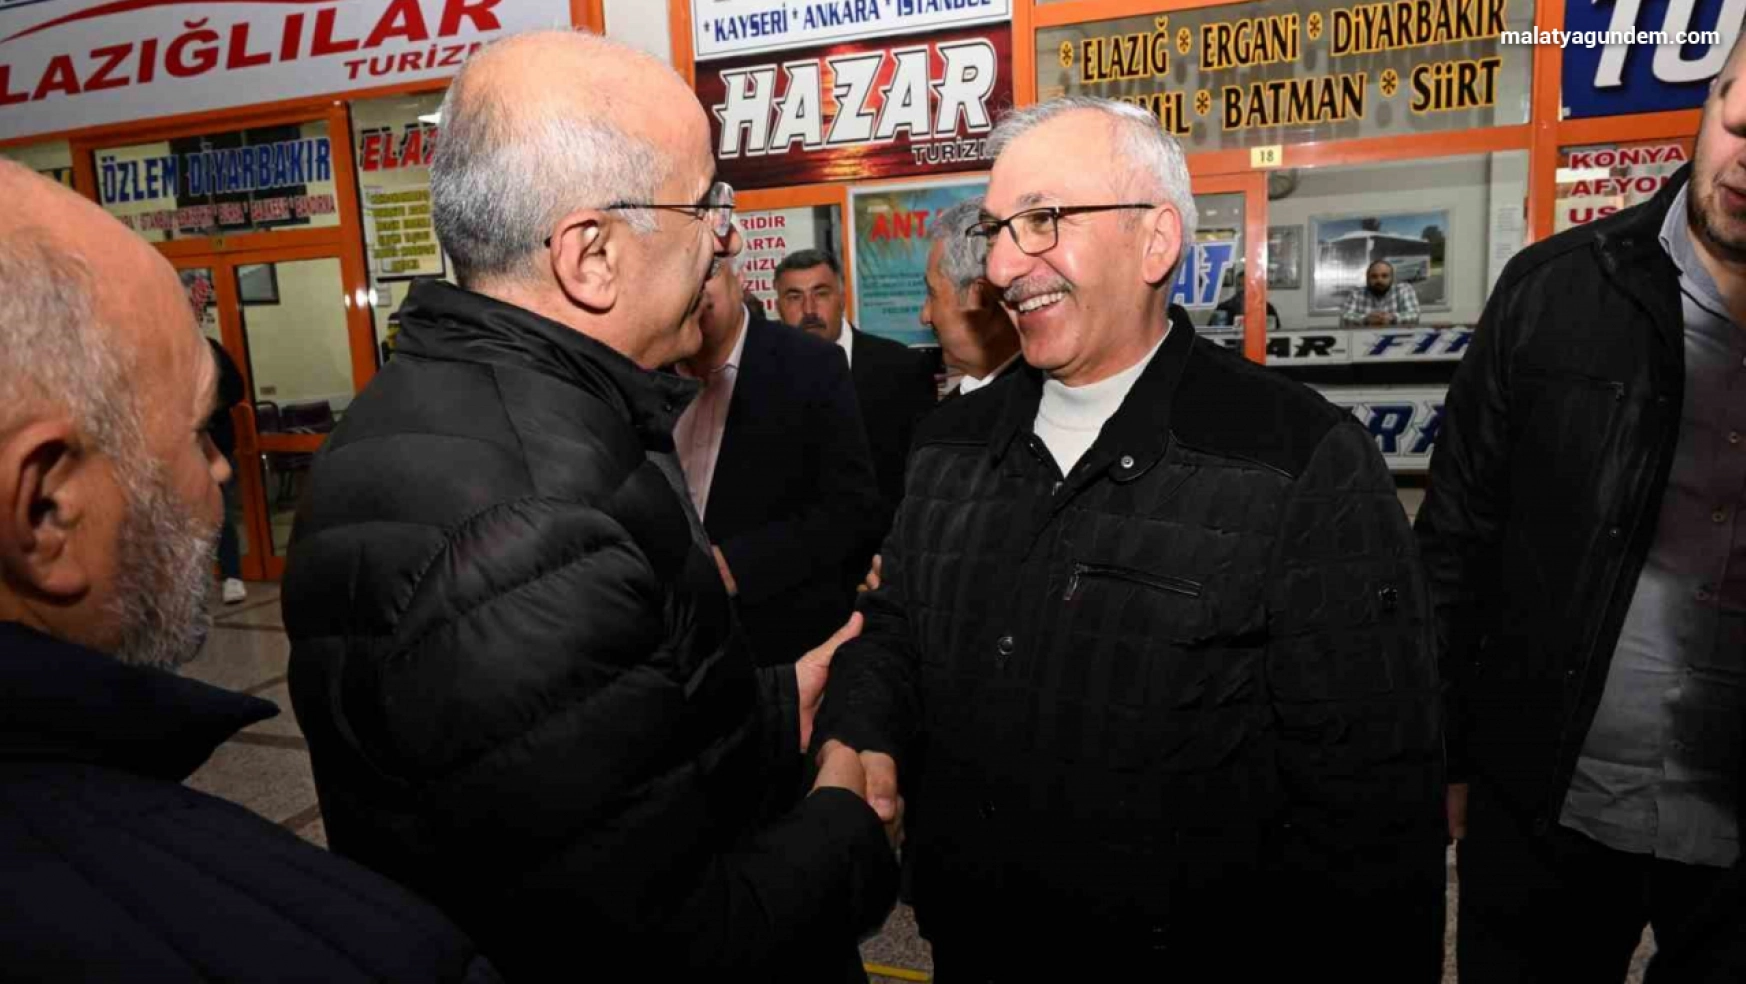 AK Parti Büyükşehir Belediye Başkan Adayı Sami Er, ziyaretlerini sürdürüyor